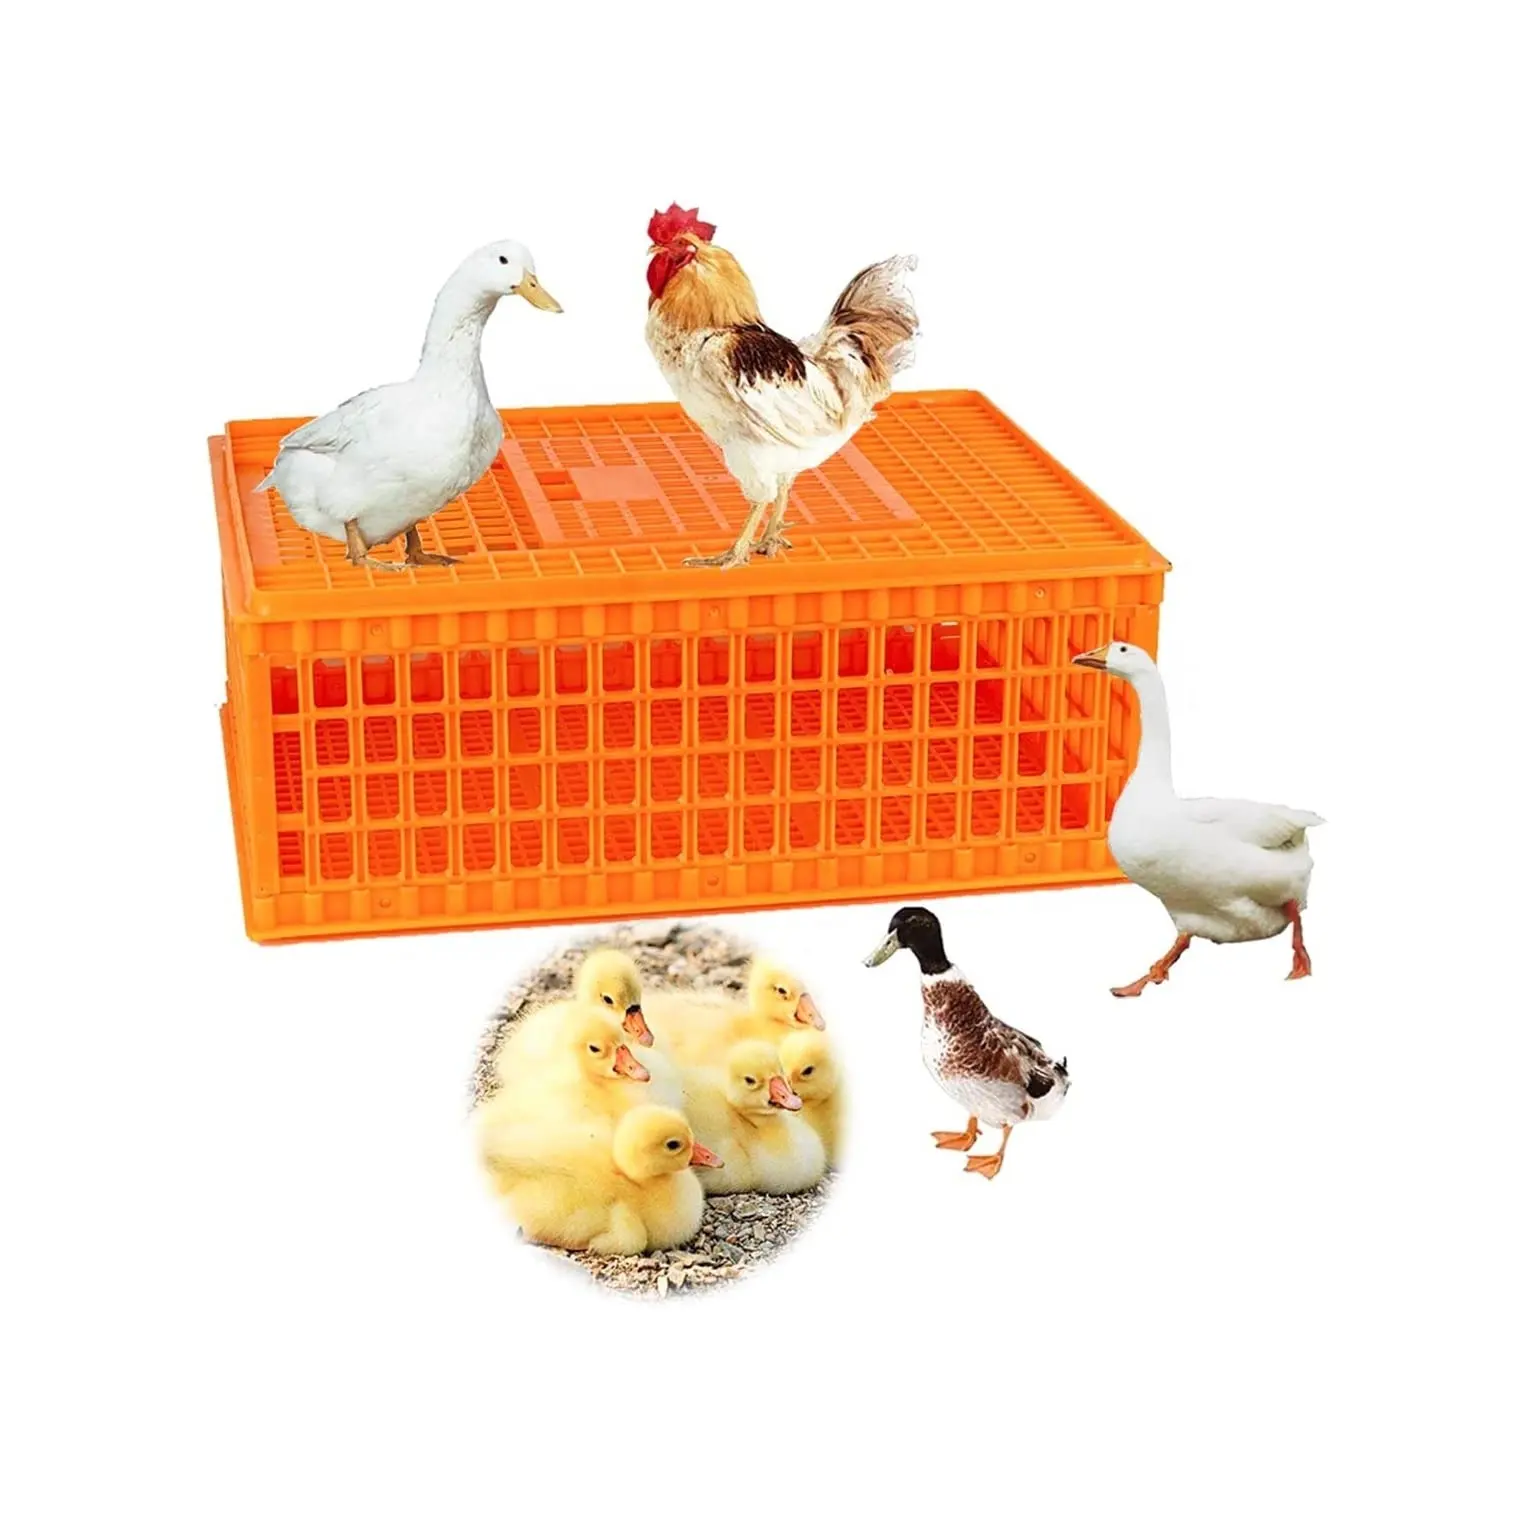 가금류 캐리어 상자 플라스틱 닭 수송 케이지 전송 조류 케이지 가금류 캐리어 바구니 10-12 성인 닭